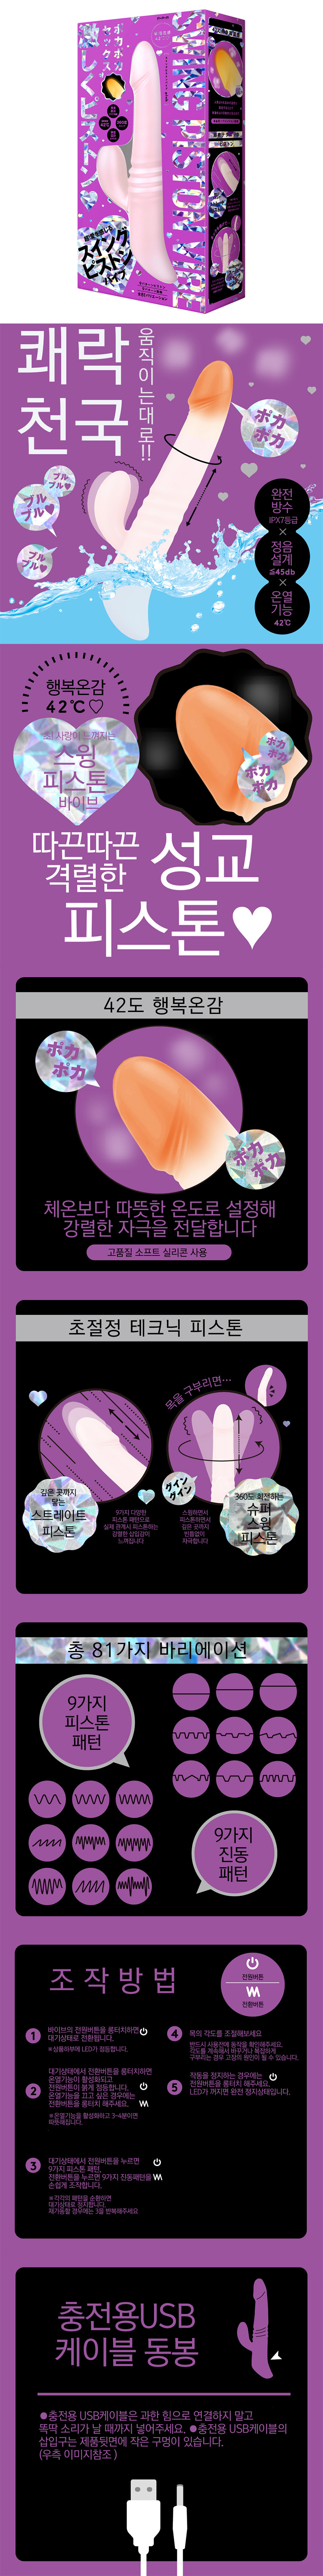 행복온감 42℃ 스윙 피스톤 바이브 핑크 (일본정품)